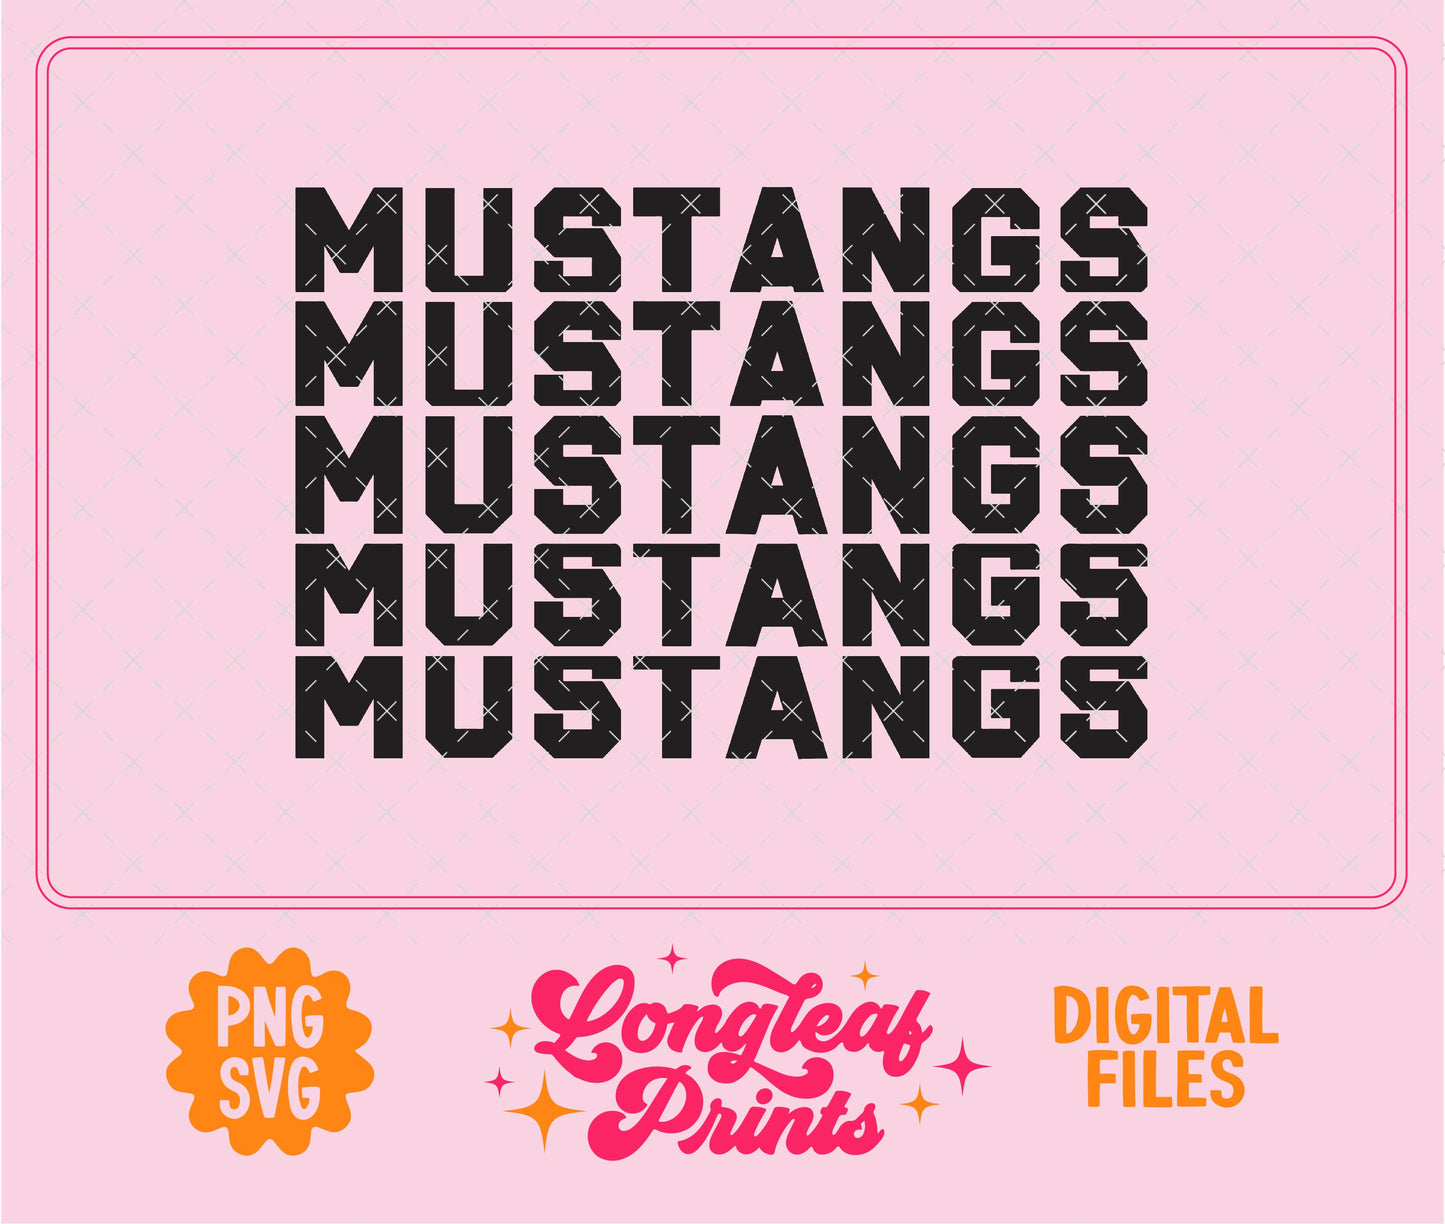 Mustangs Block Letter Mascot SVG Digital Download Design File